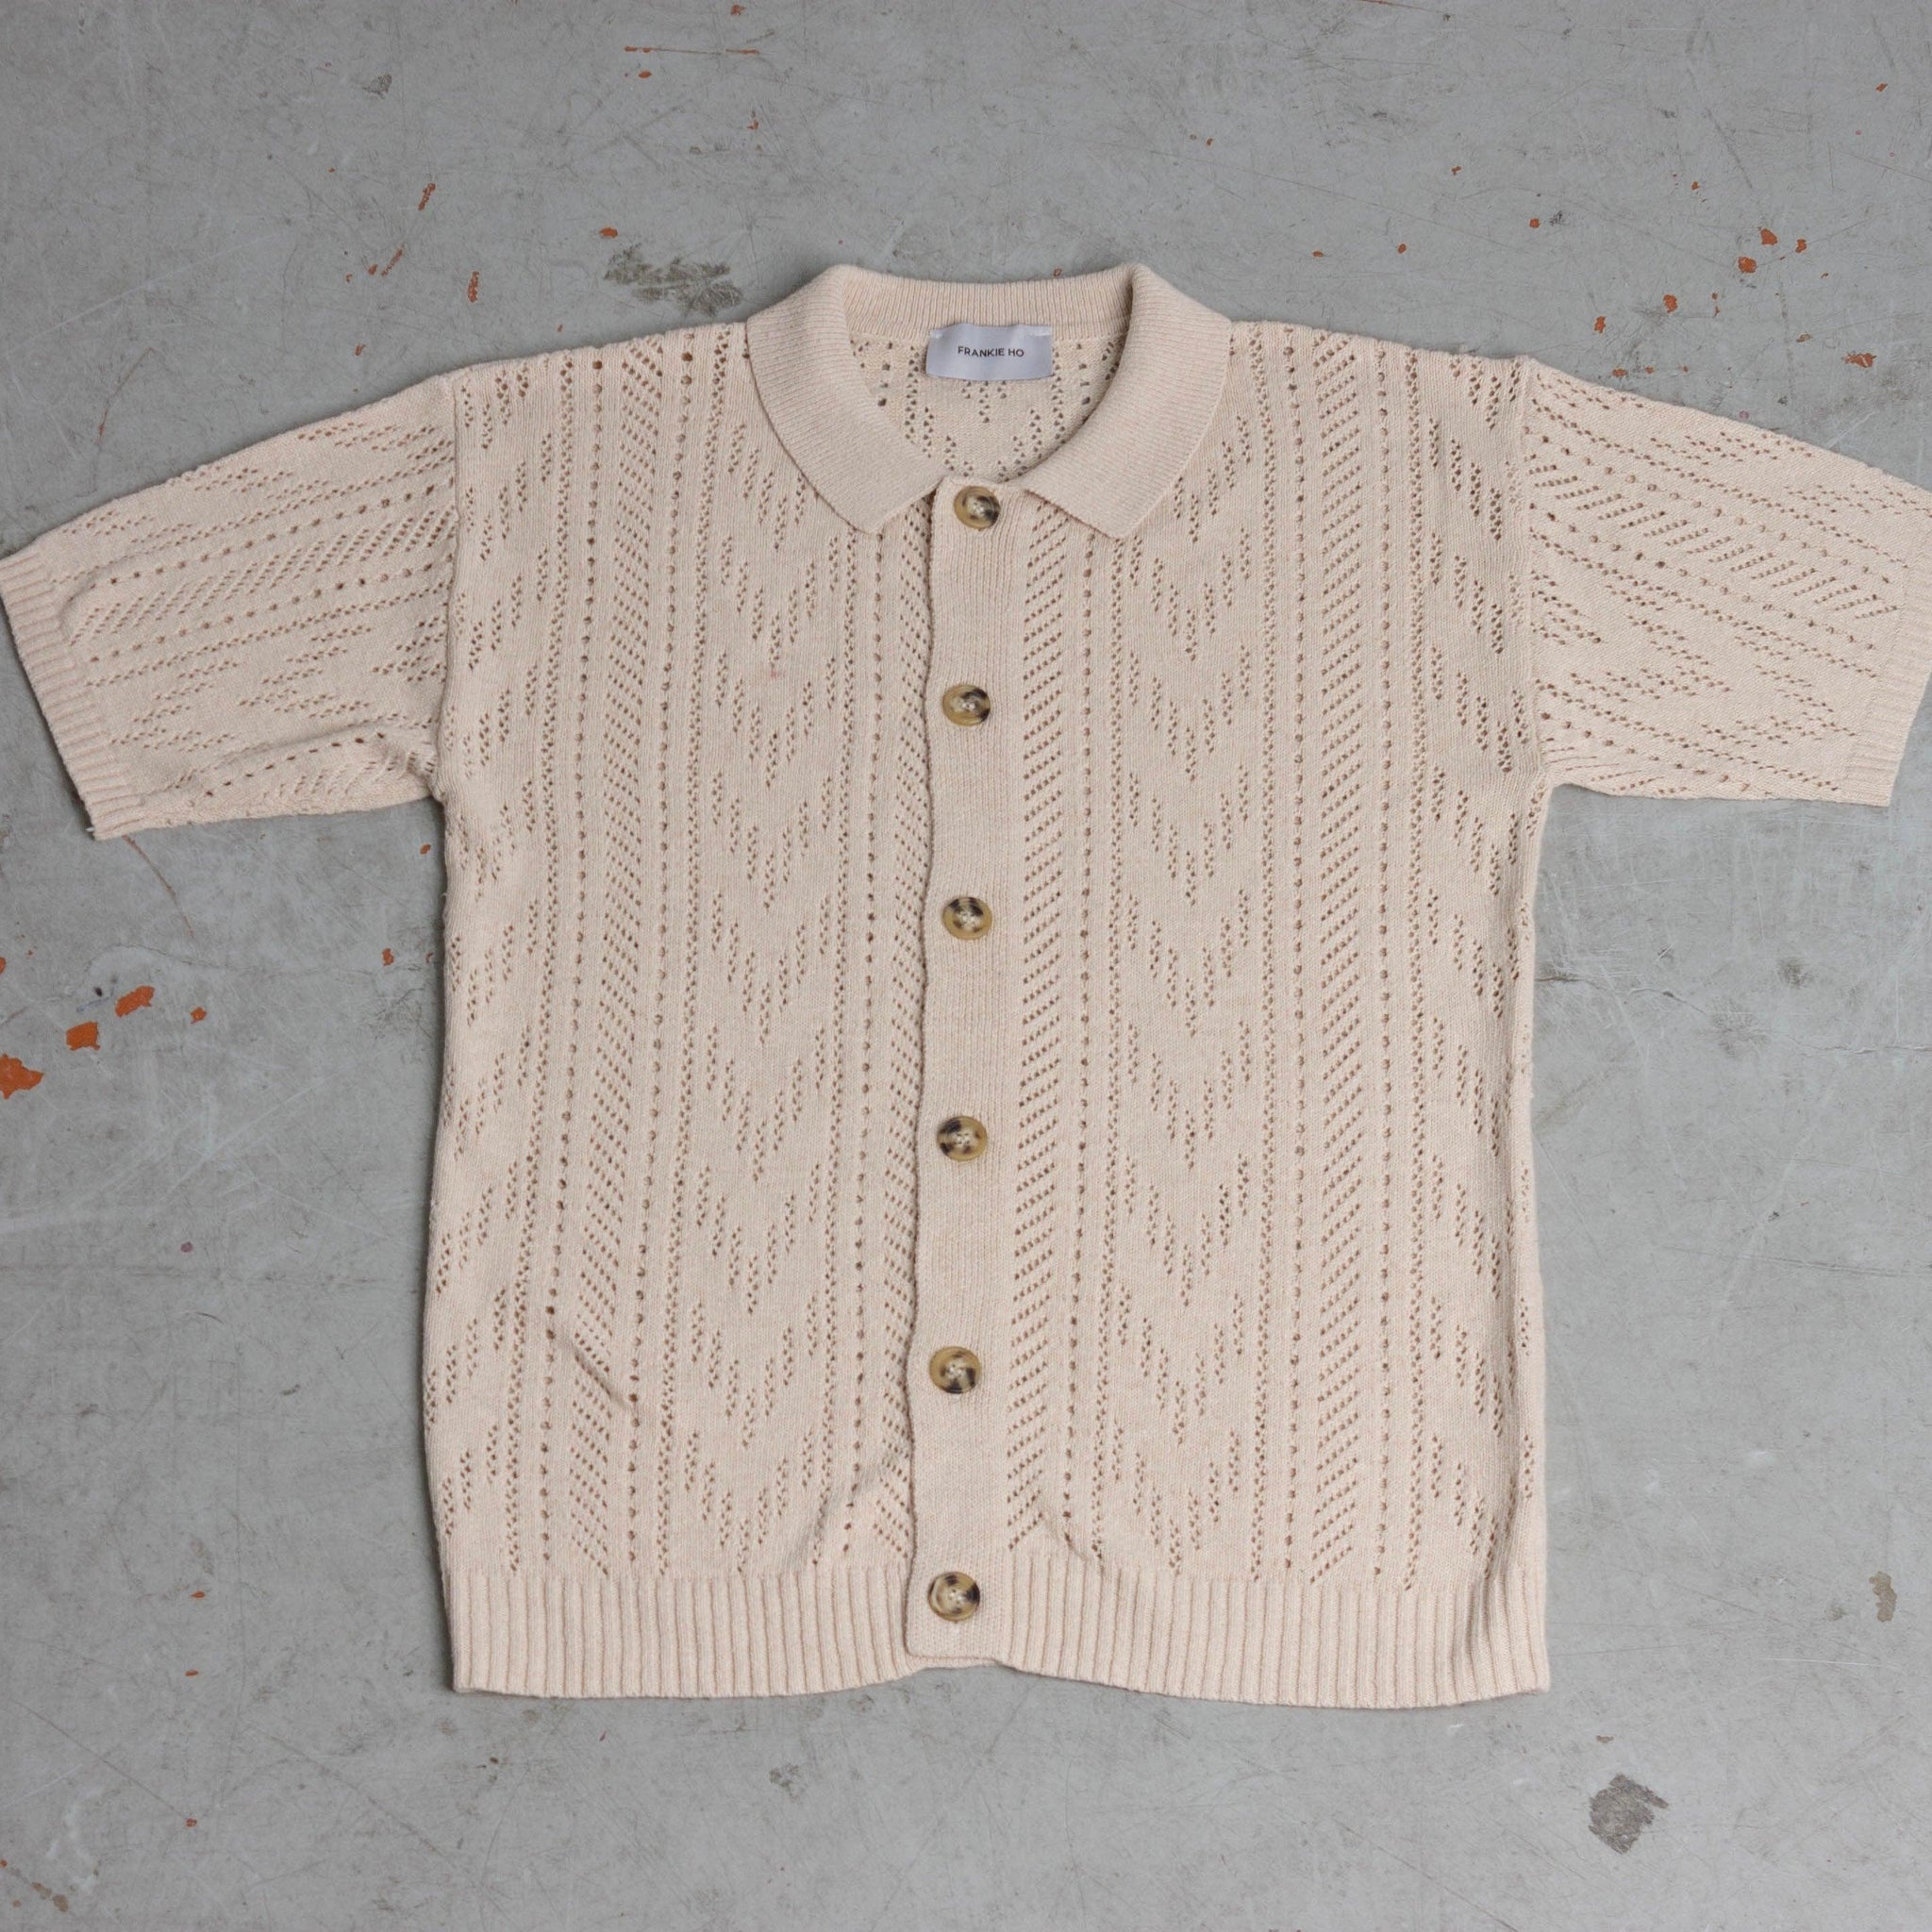 Polo camicia in maglia crochet - FRANKIE HO